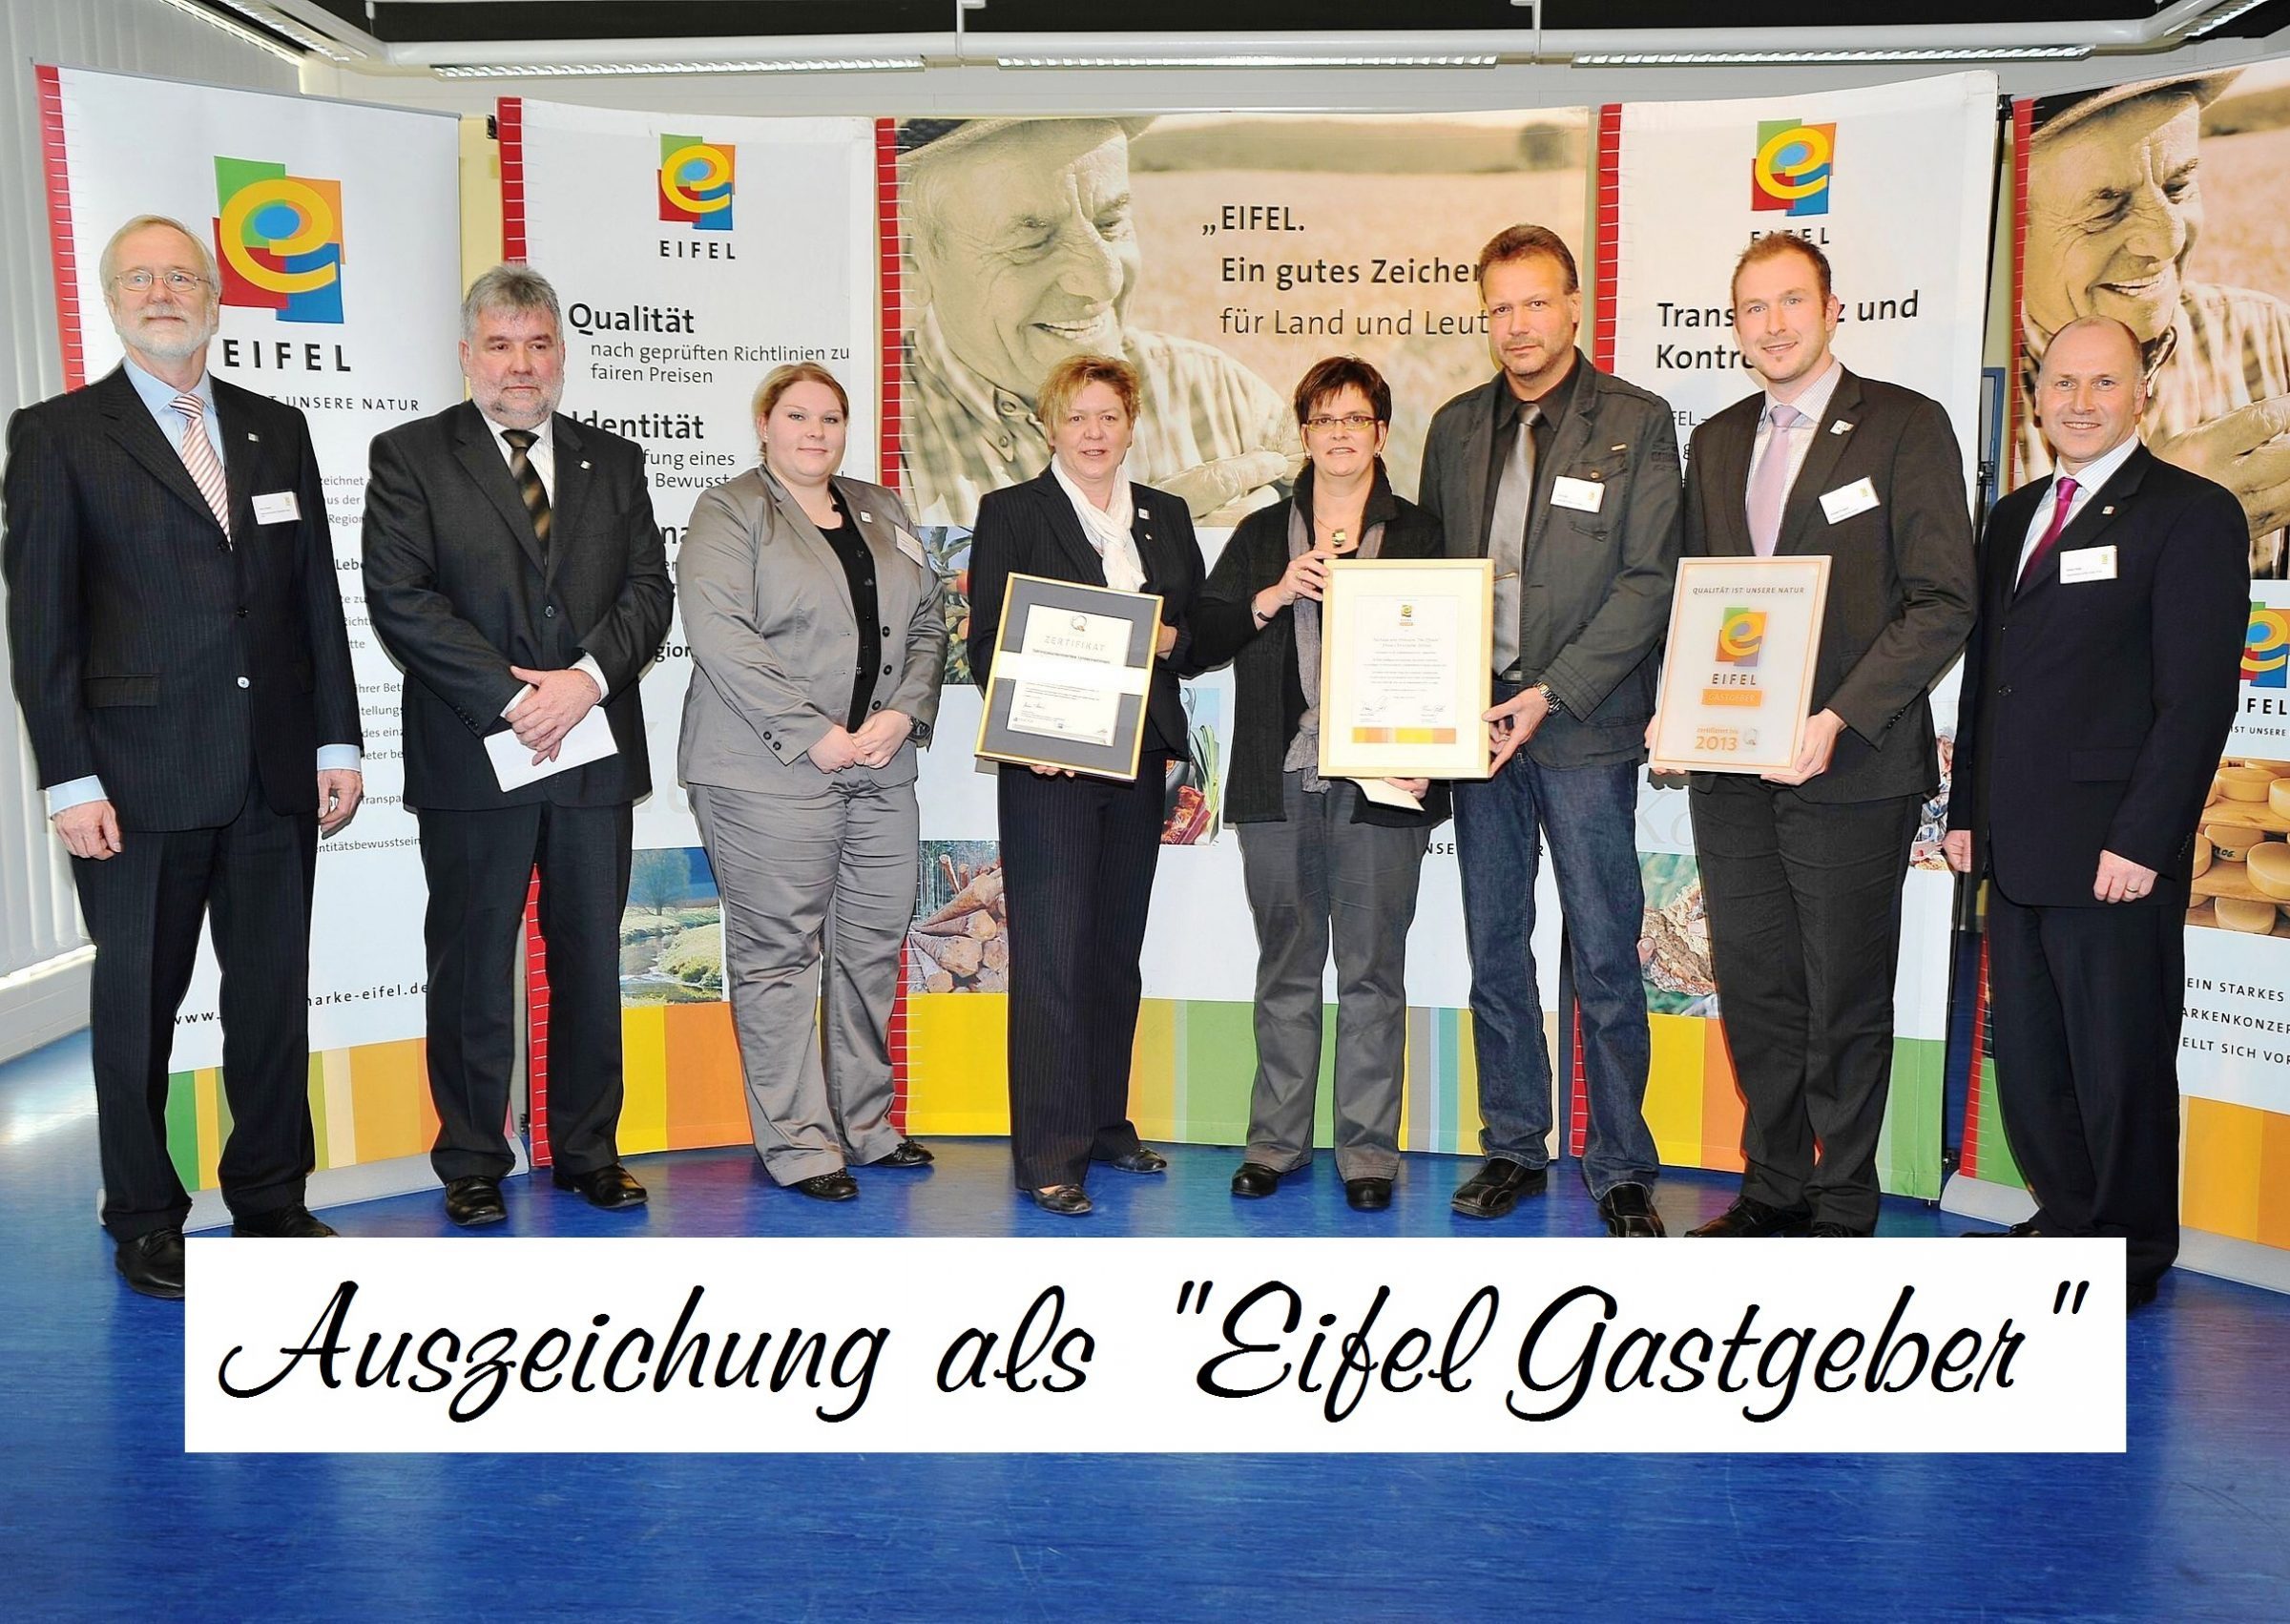 Auszeichnung als Eifel Gastgeber der Regionalmarke Eifel